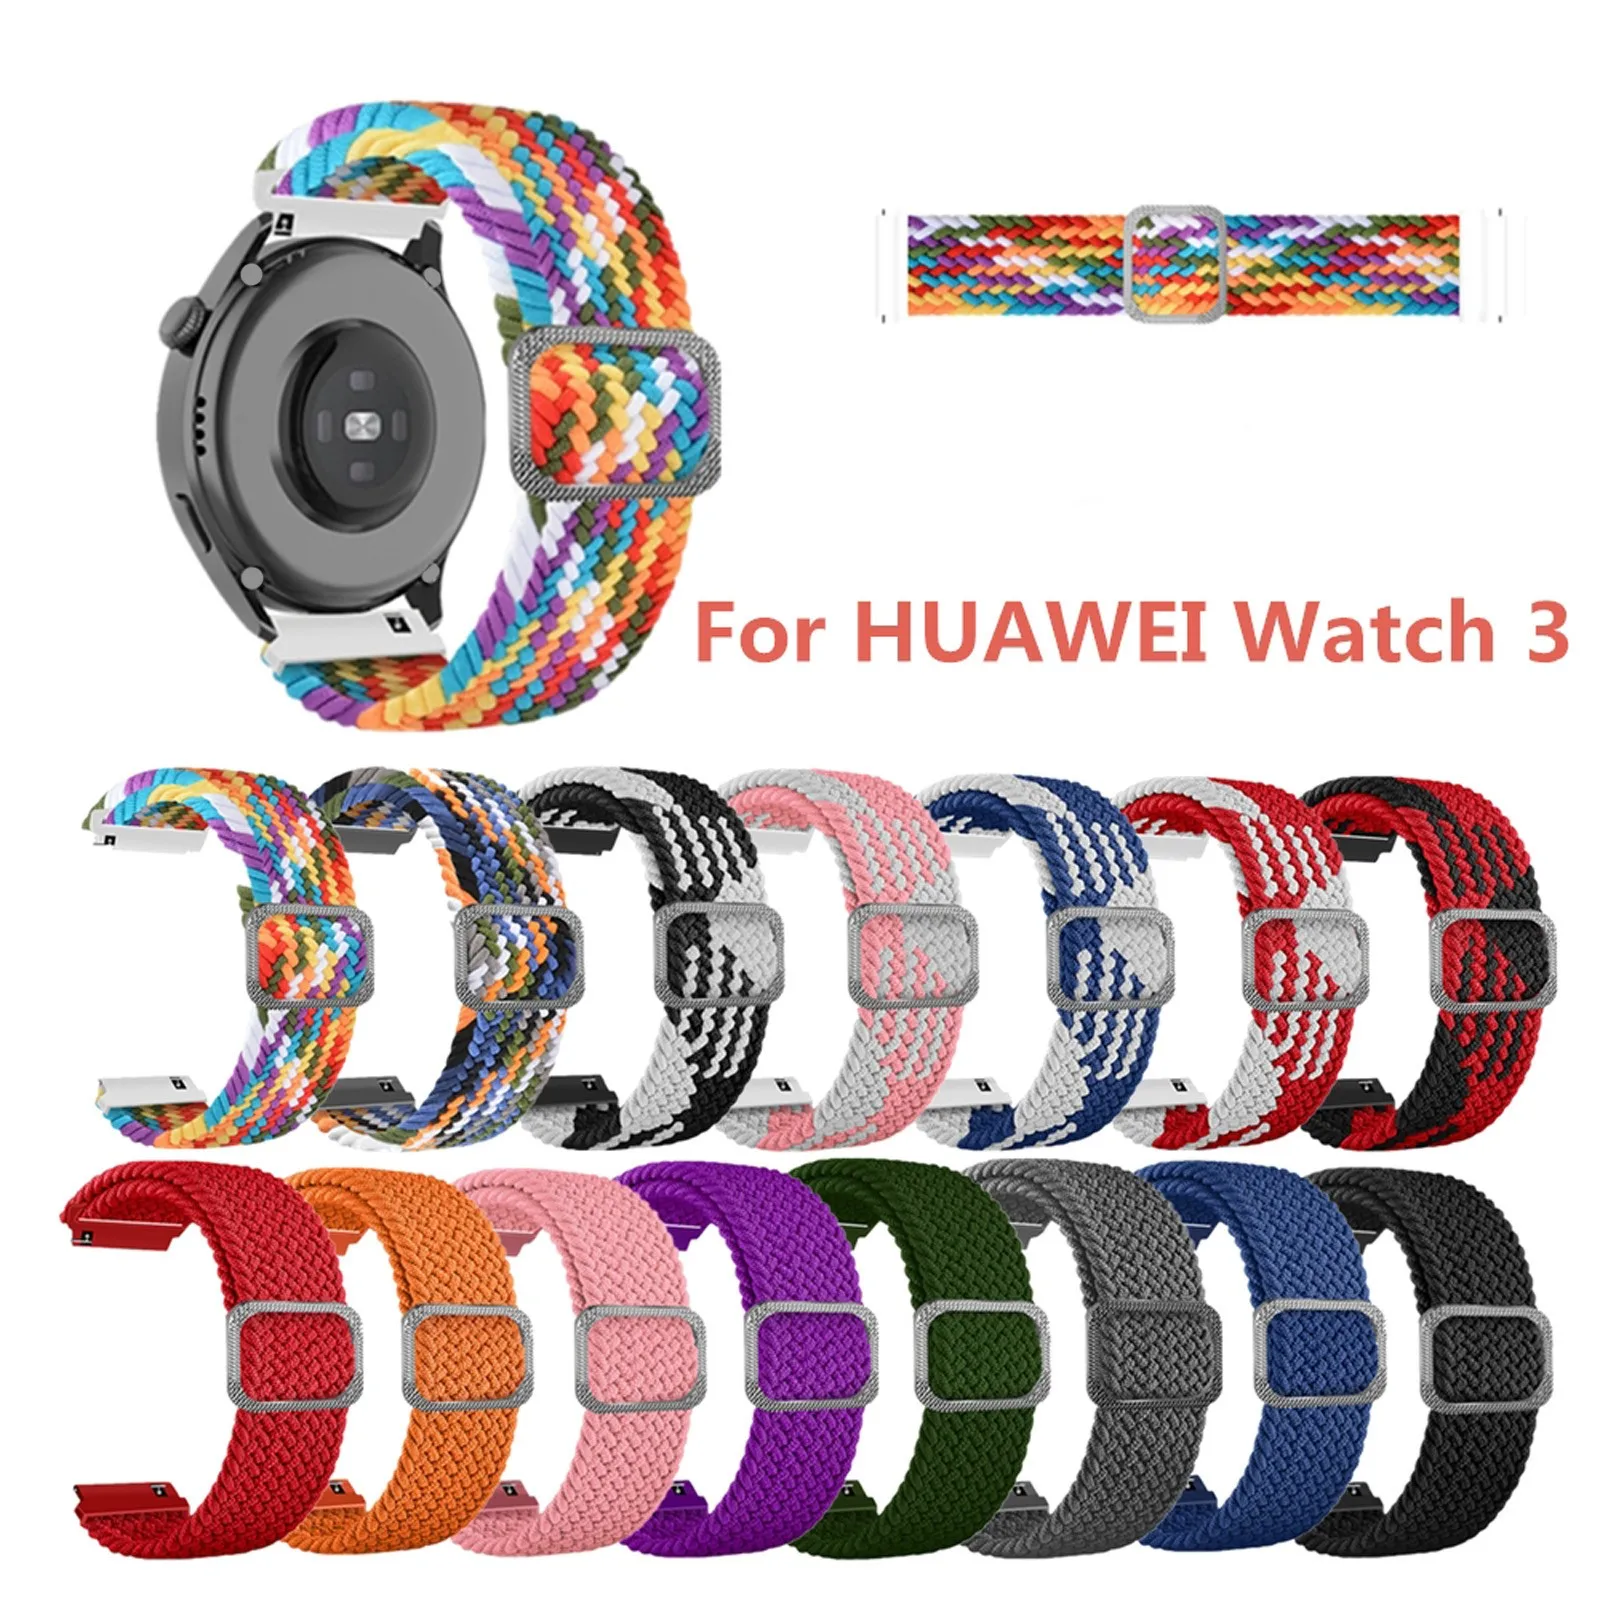 

Регулируемый нейлоновый текстильный эластичный сменный ремешок 22 мм для Huawei Watch 3, быстросъемный ремешок, разноцветные аксессуары